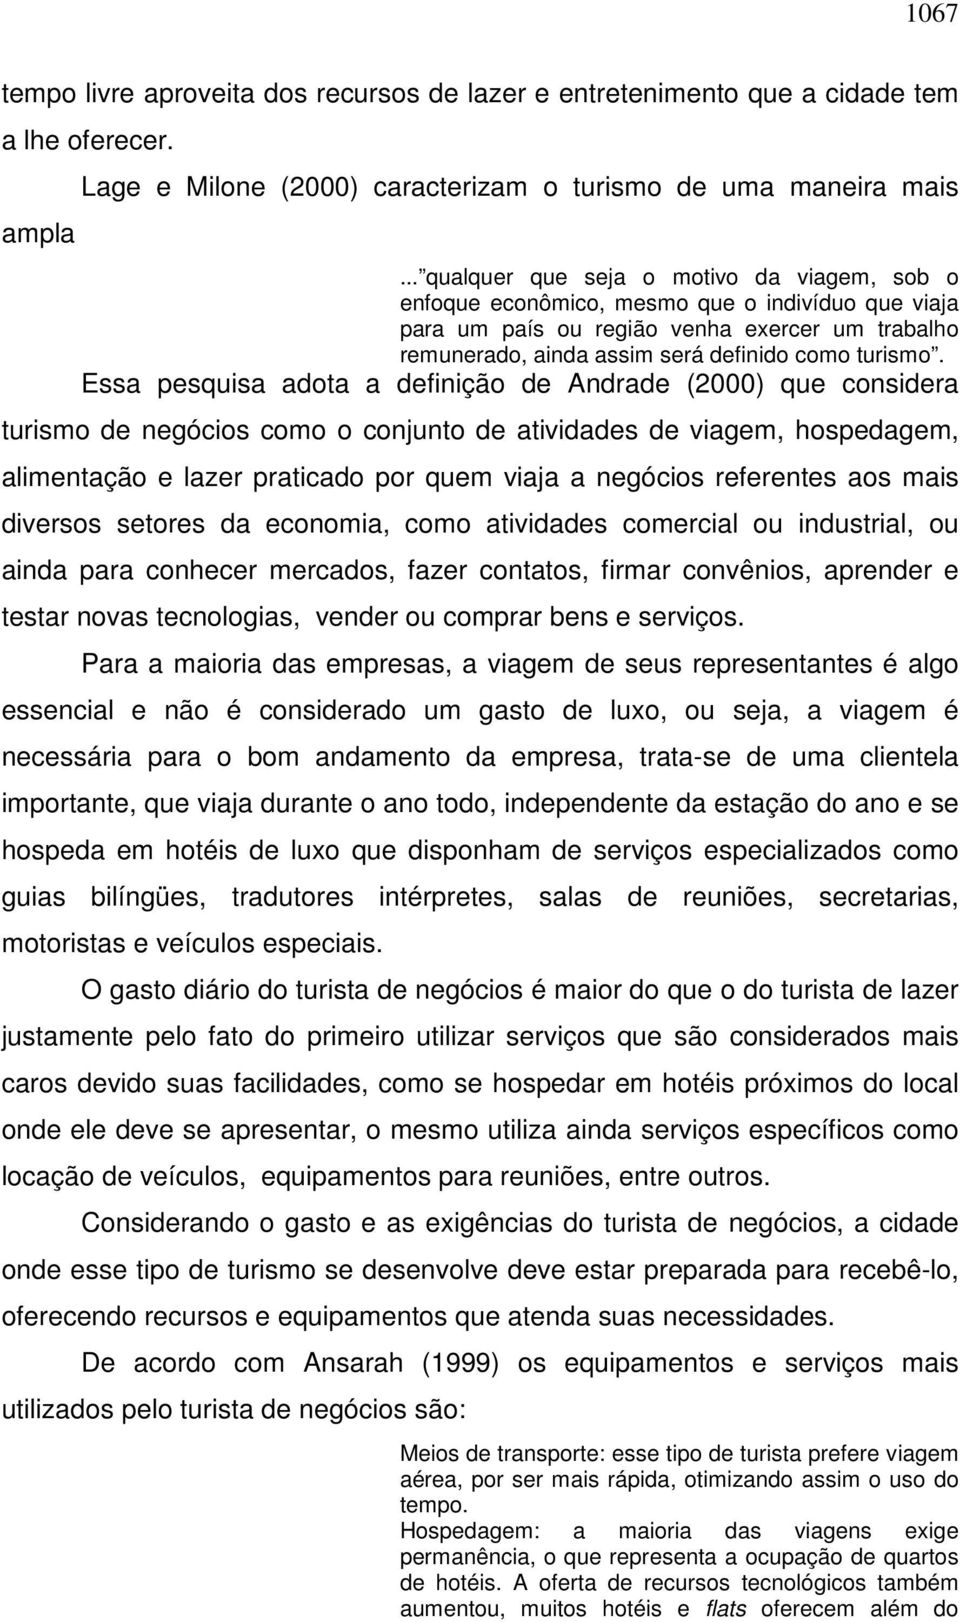 Essa pesquisa adota a definição de Andrade (2000) que considera turismo de negócios como o conjunto de atividades de viagem, hospedagem, alimentação e lazer praticado por quem viaja a negócios